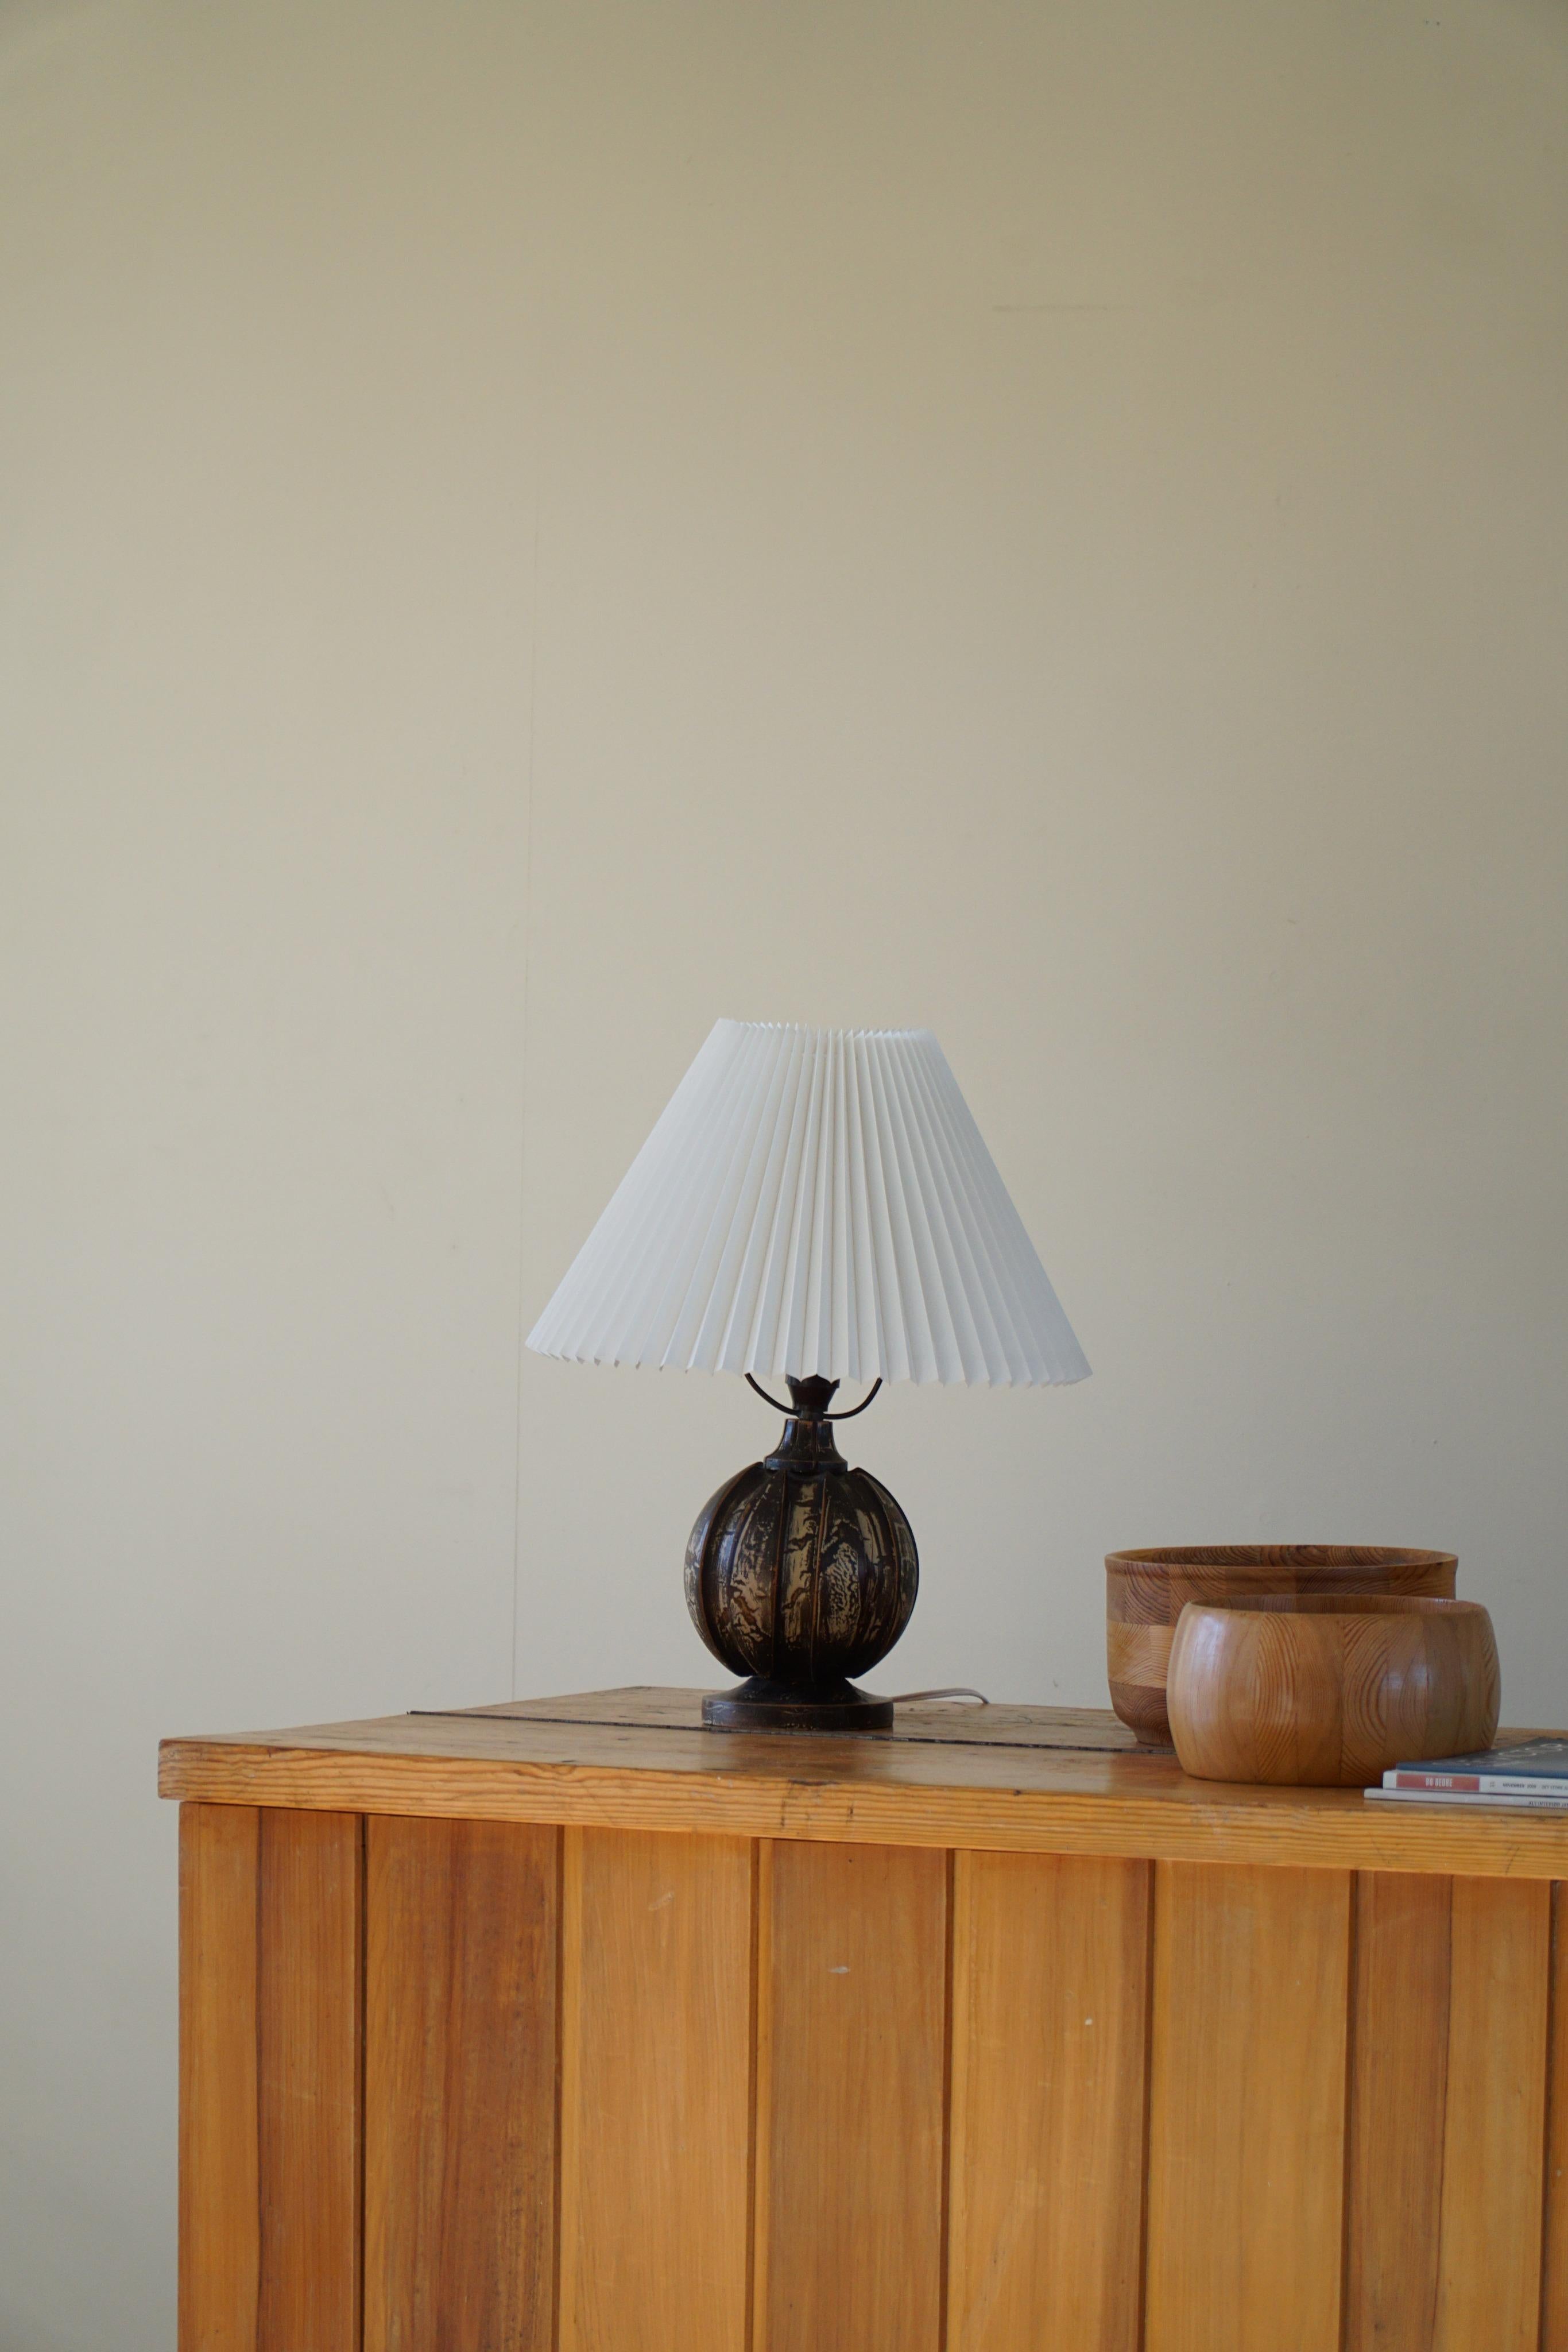 Eine runde Holztischlampe aus der Mitte des 20. Jahrhunderts mit bemalter Oberfläche. Hergestellt in Dänemark. Schöne Form, die den Gesamteindruck dieser Art-Deco-Tischlampe vervollständigt.

